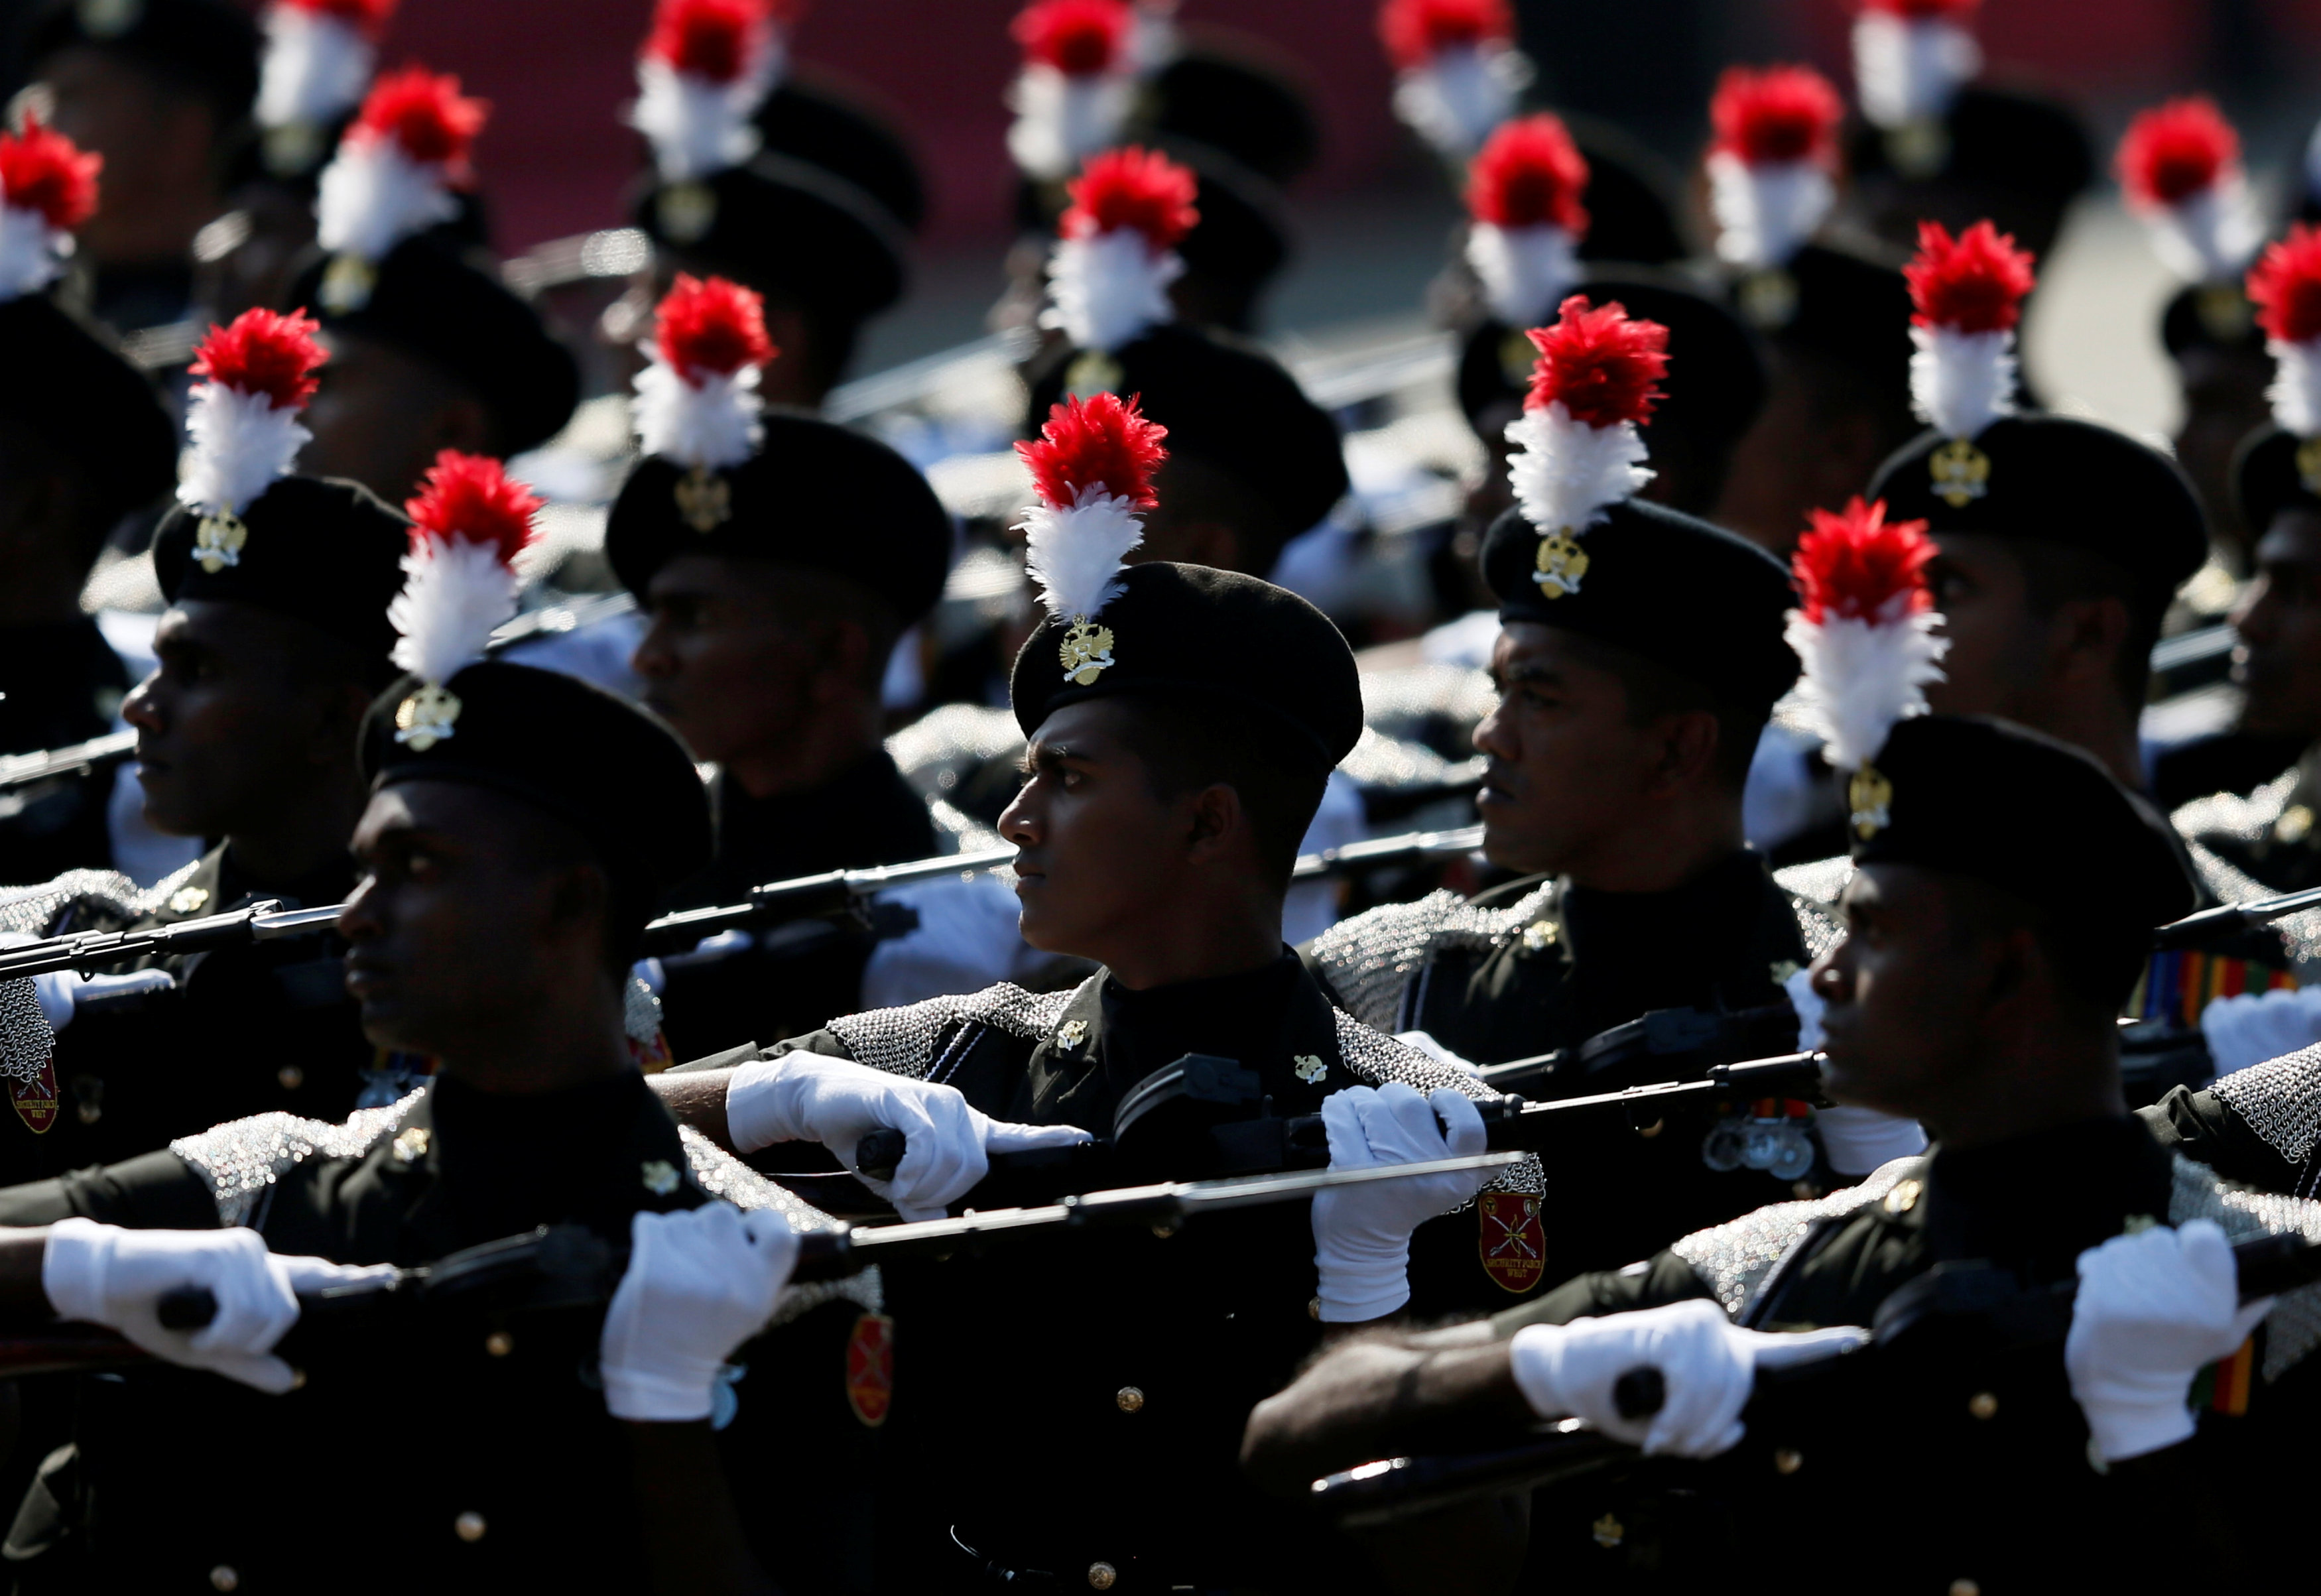 عروض عسكرية للجيش السريلانكى خلال احتفال الذكرى 69 للاستقلال